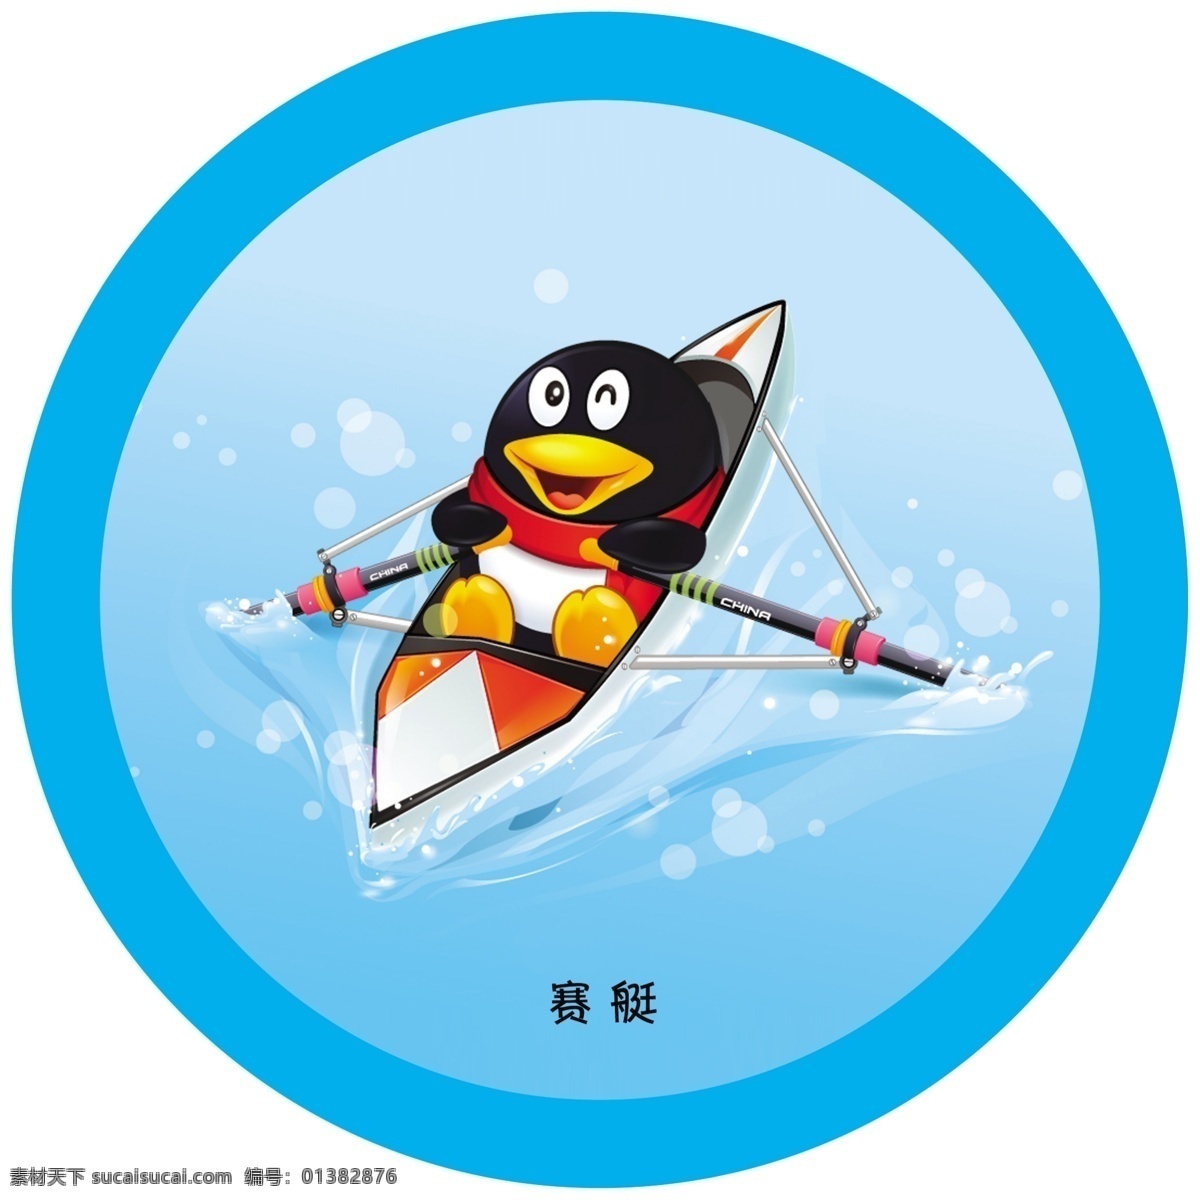 分层 qq 插画 船 底纹 划船 兰色 企鹅 赛艇 奥运项目 运动项目 设计素材 圆形 源文件 插画集